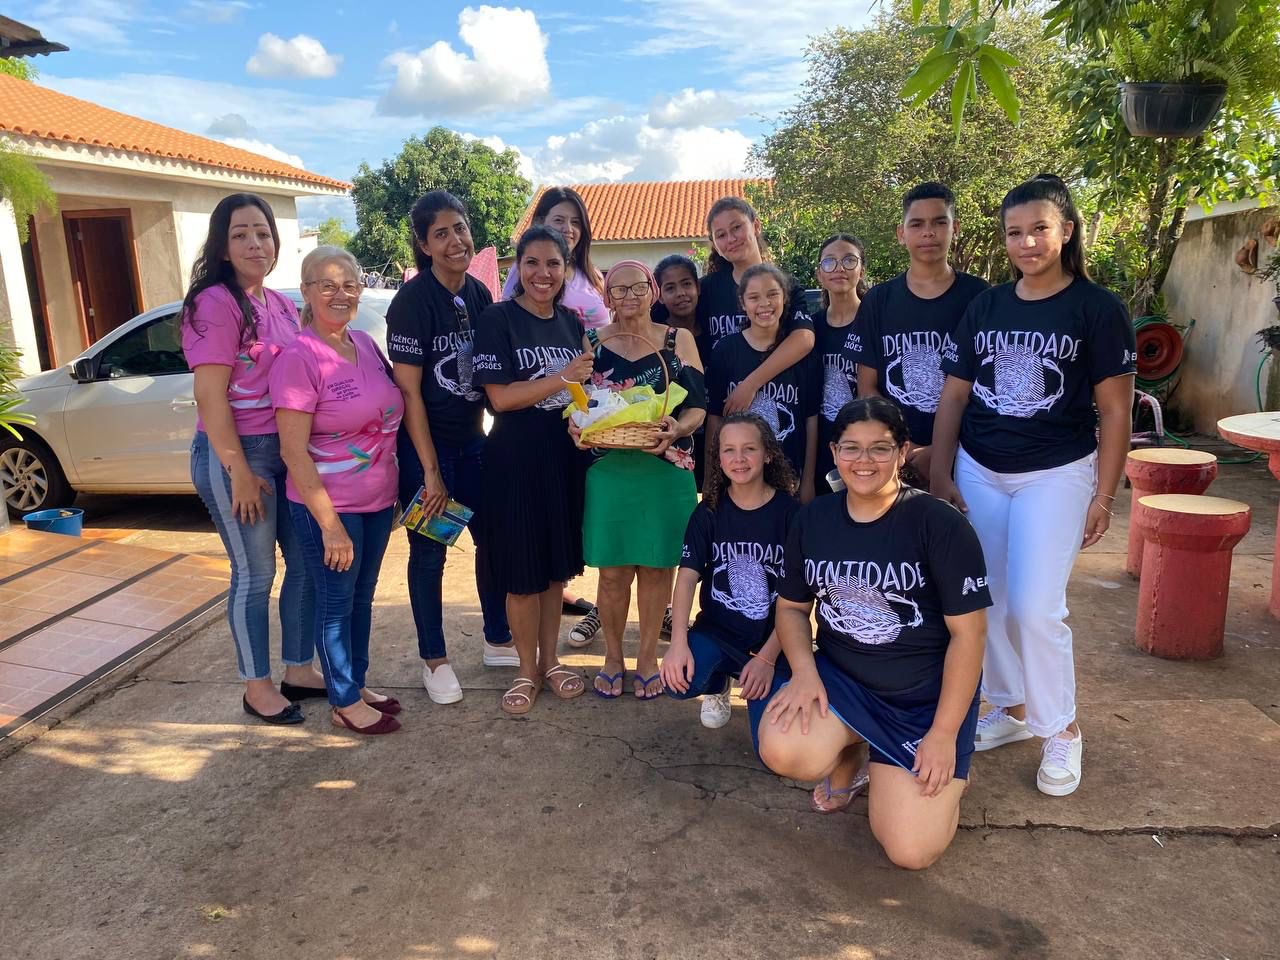 Escola Adventista de Mundo Novo e rede feminina de combate ao câncer unem-se em ação humanitária